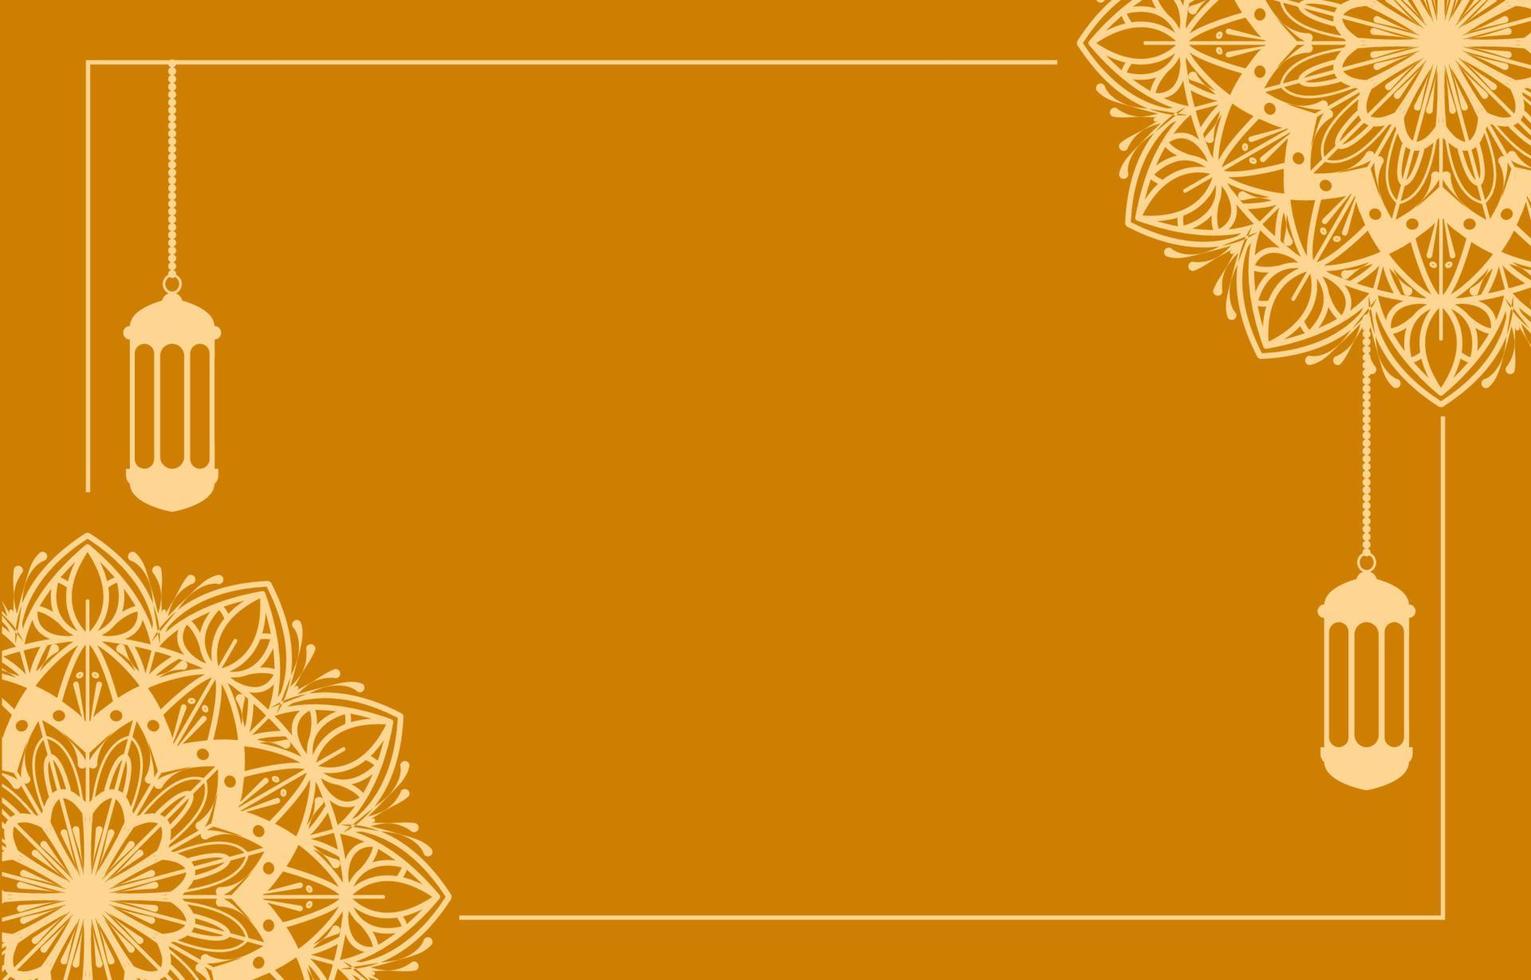 islamisches hintergrundvektordesign mit arabischer mandaladekoration für ramadan kareem tag banner oder eid mubarak, muharram vektor